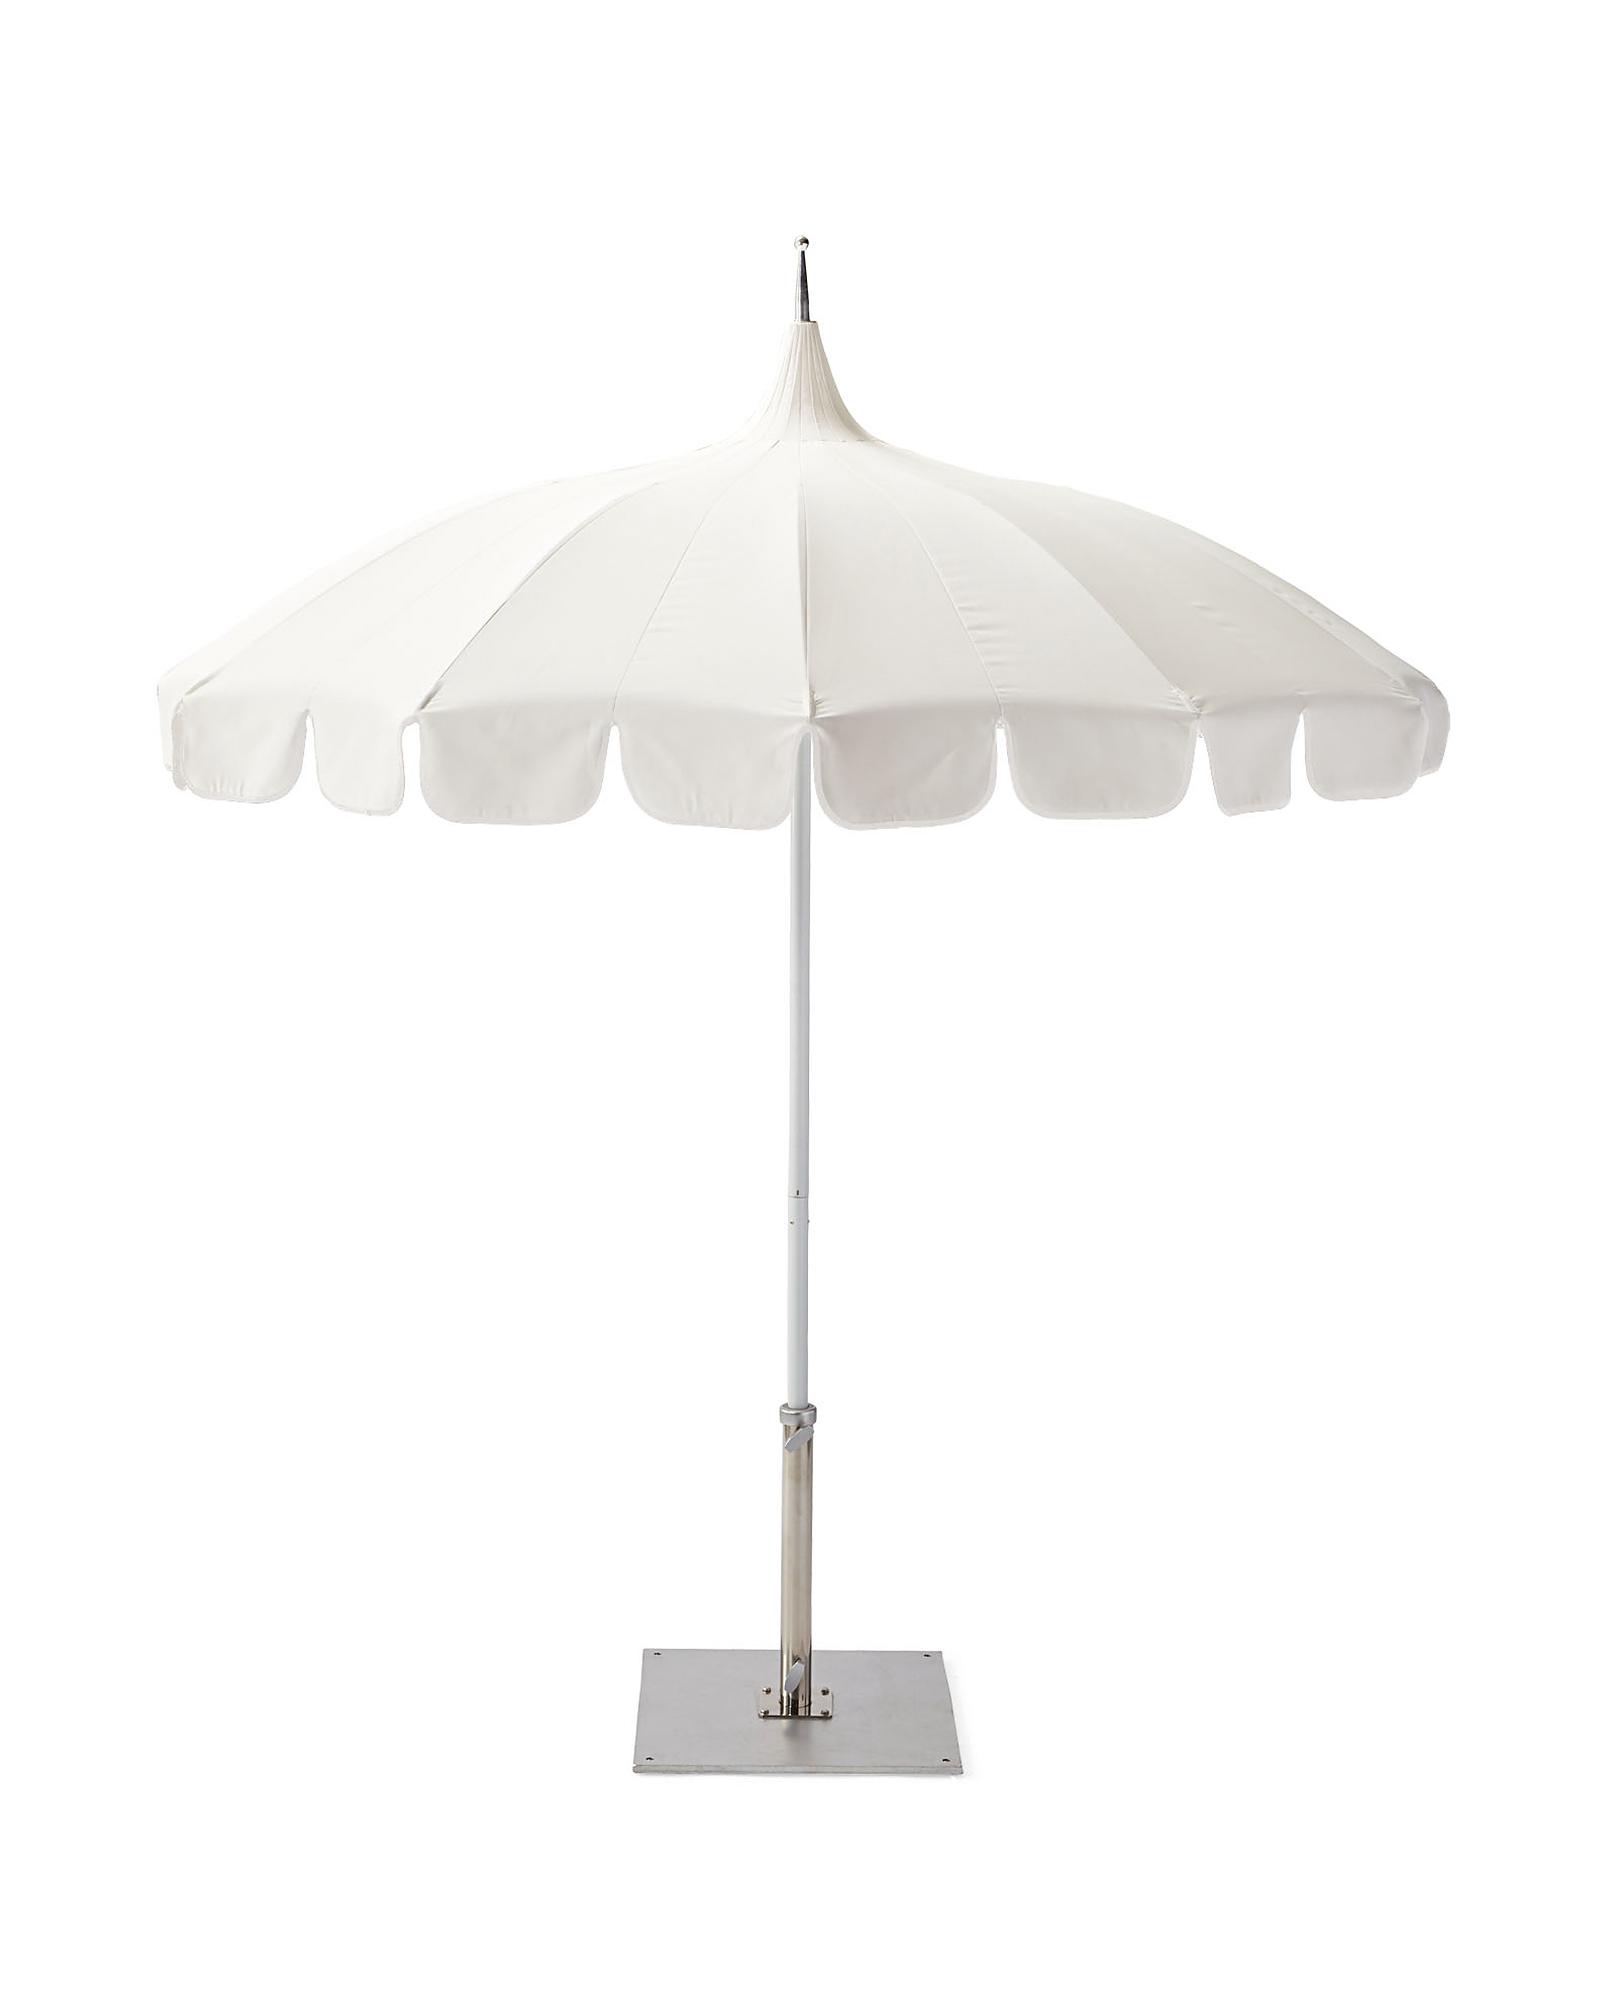 Eastport Umbrella